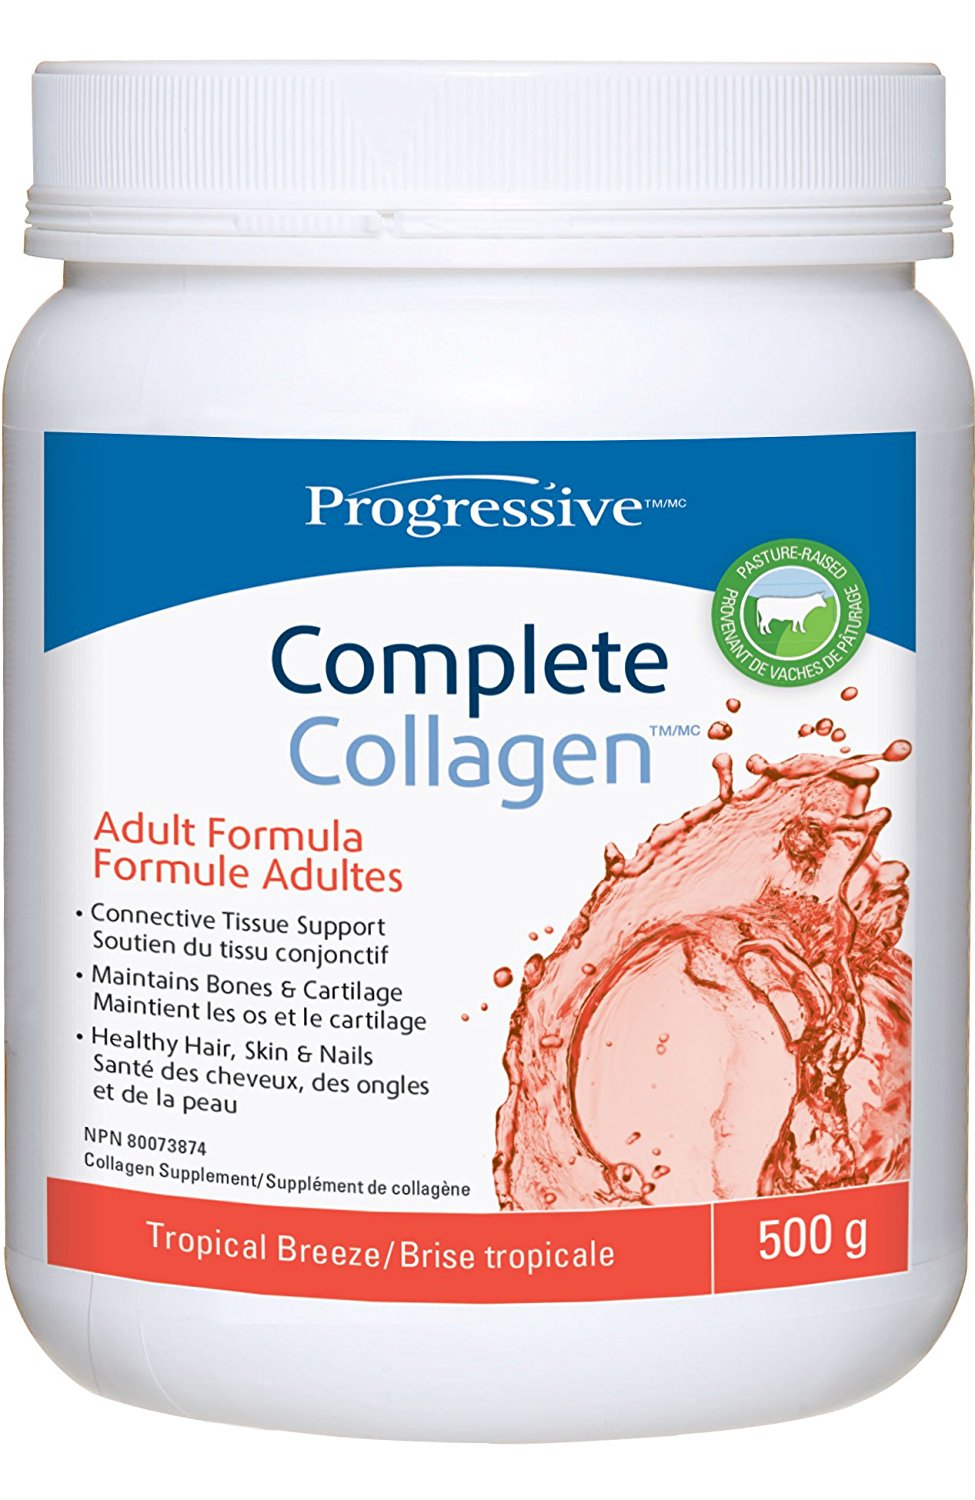 Progressive Complete Collagen Tropical Breeze (500g)